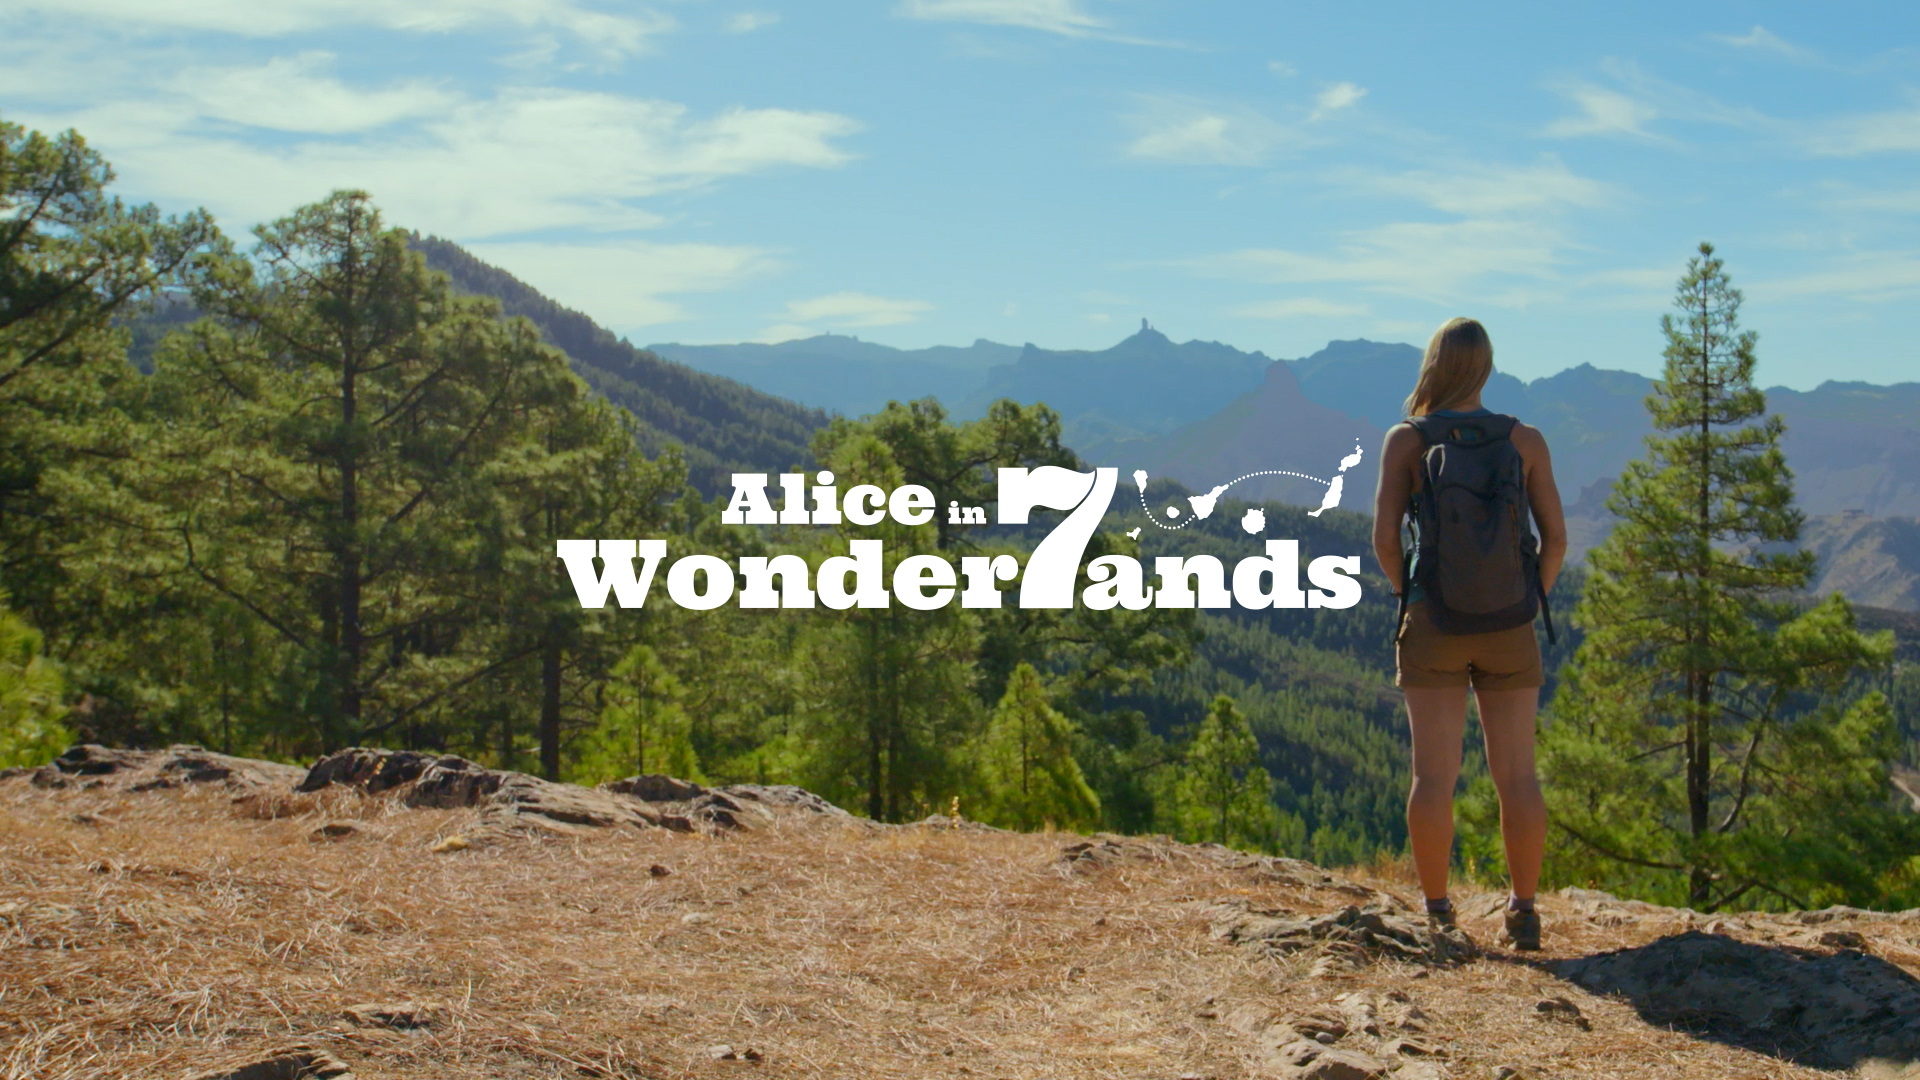 Alice in 7 wonderlands - Gran Canaria